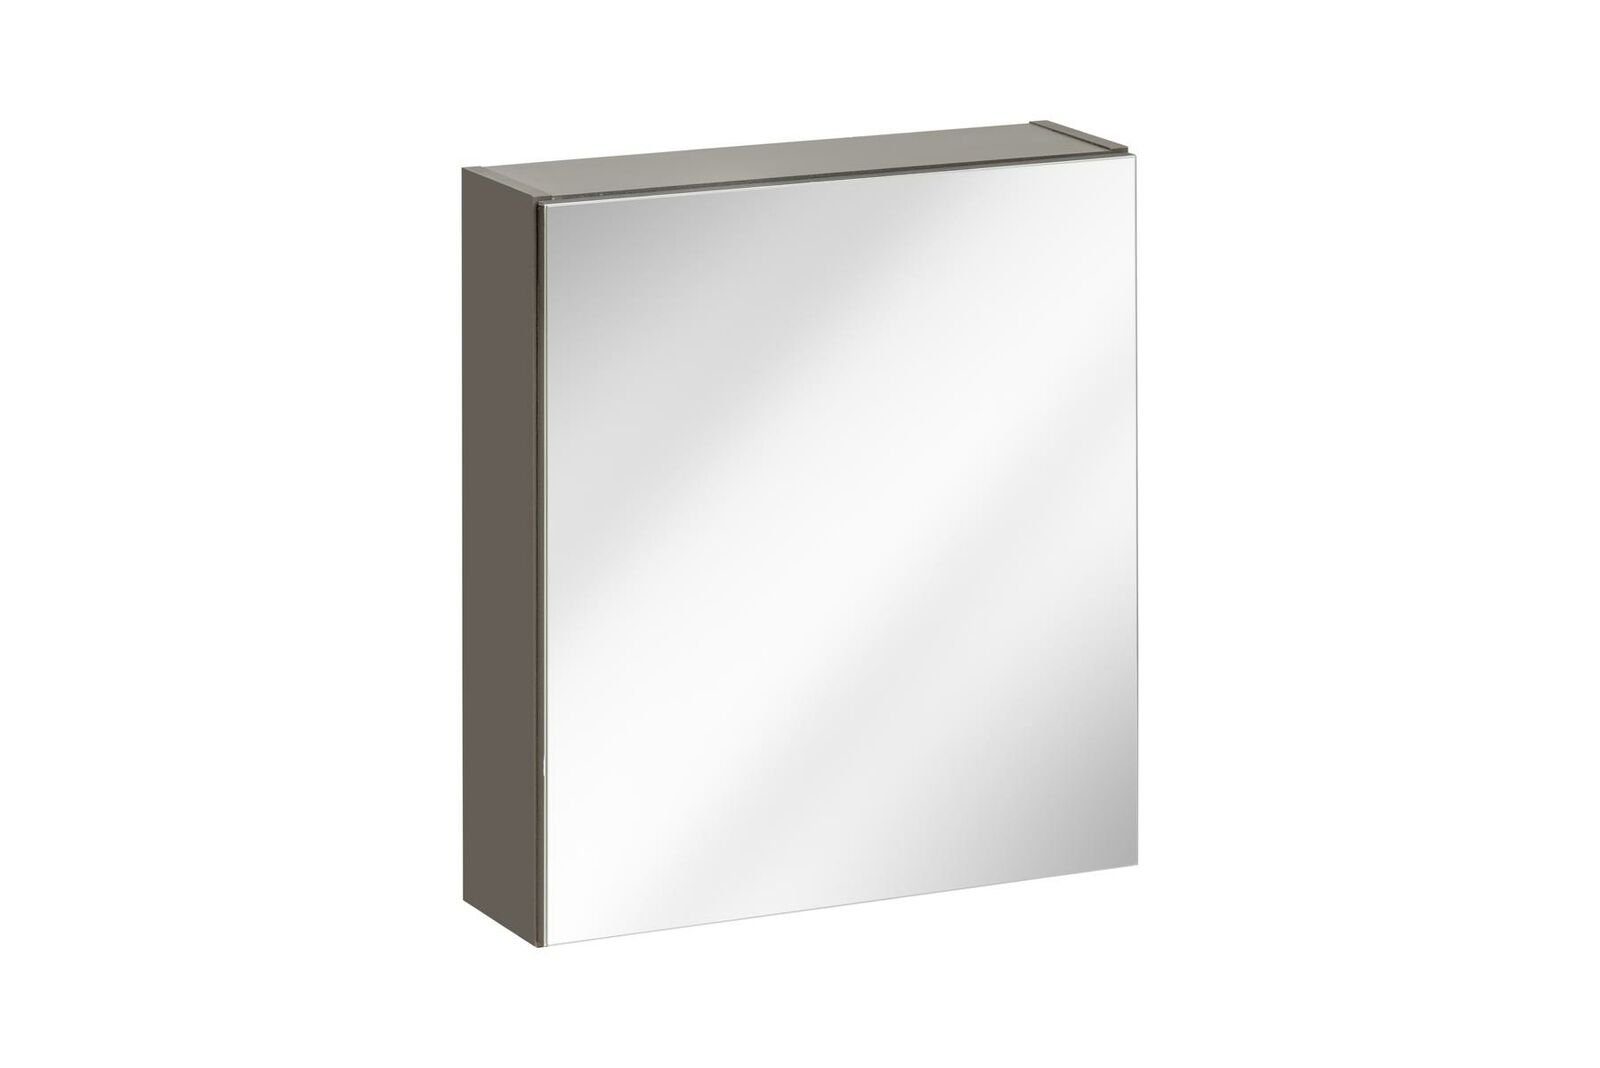 JVmoebel Badezimmerspiegelschrank Spiegelschrank Badspiegel Hängeschrank Wandschrank Badezimmerschrank 40x15x55cm | Spiegelschränke